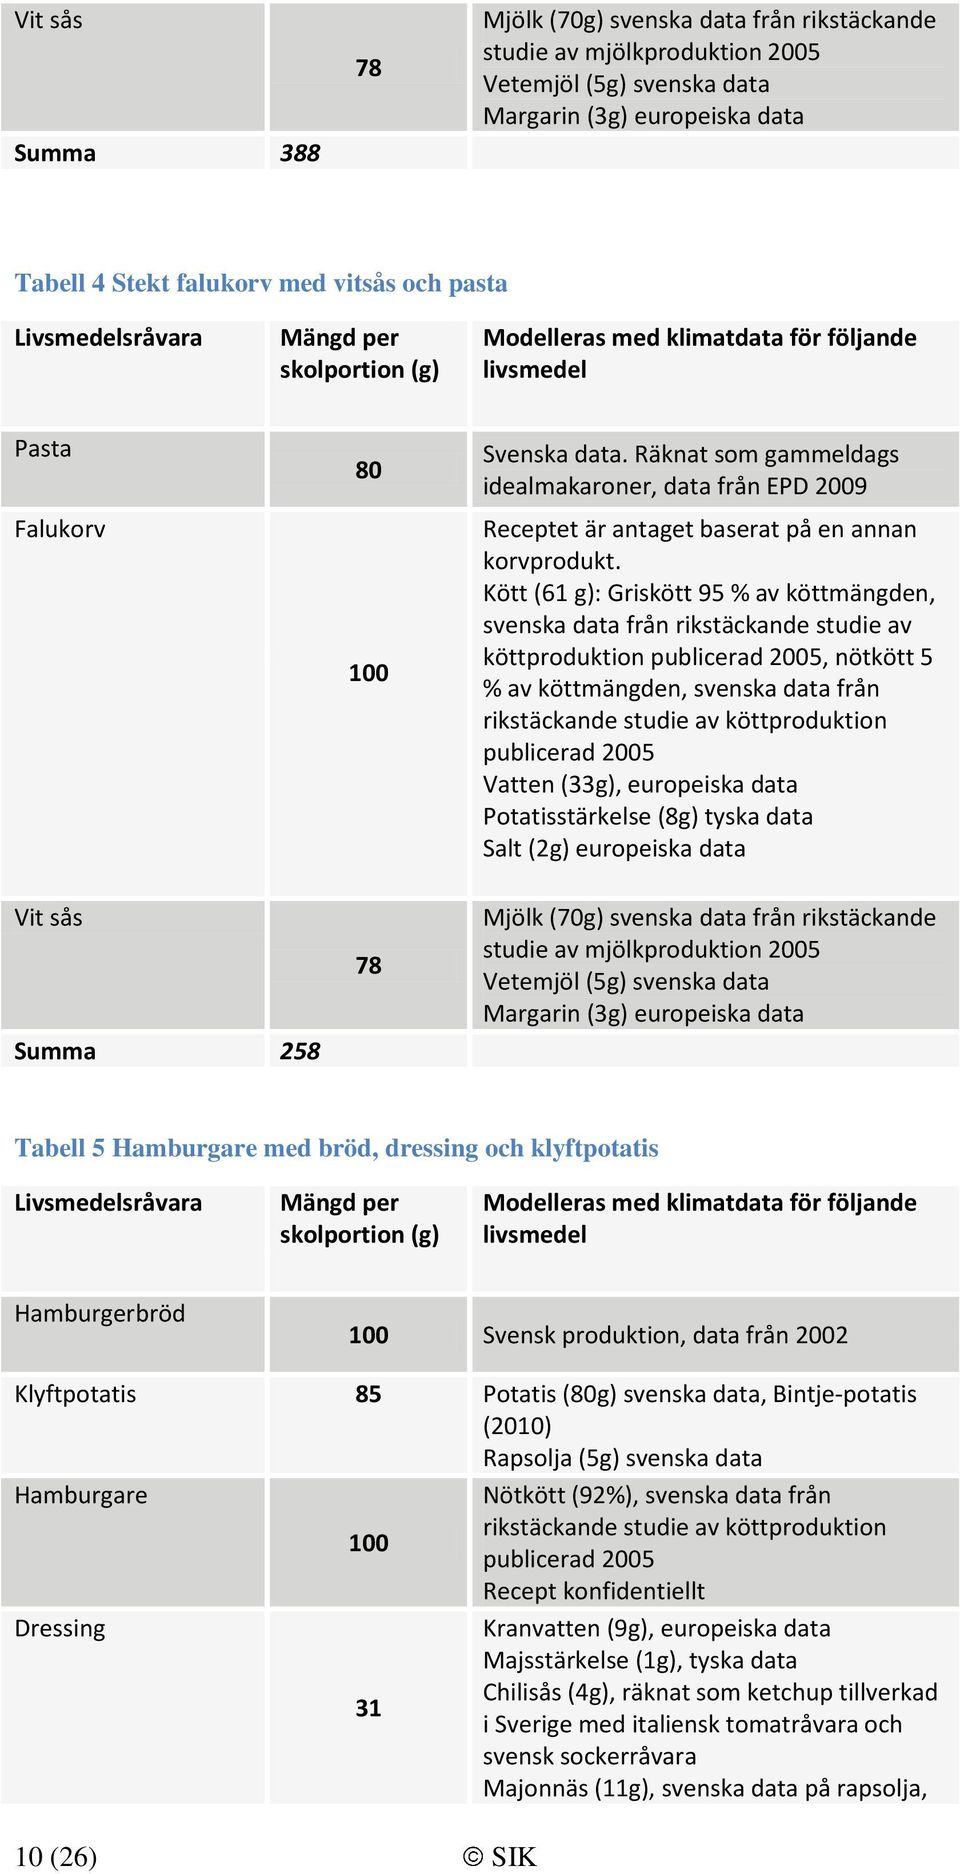 Kött (61 g): Griskött 95 % av köttmängden, svenska data från rikstäckande studie av köttproduktion publicerad 2005, nötkött 5 % av köttmängden, svenska data från rikstäckande studie av köttproduktion